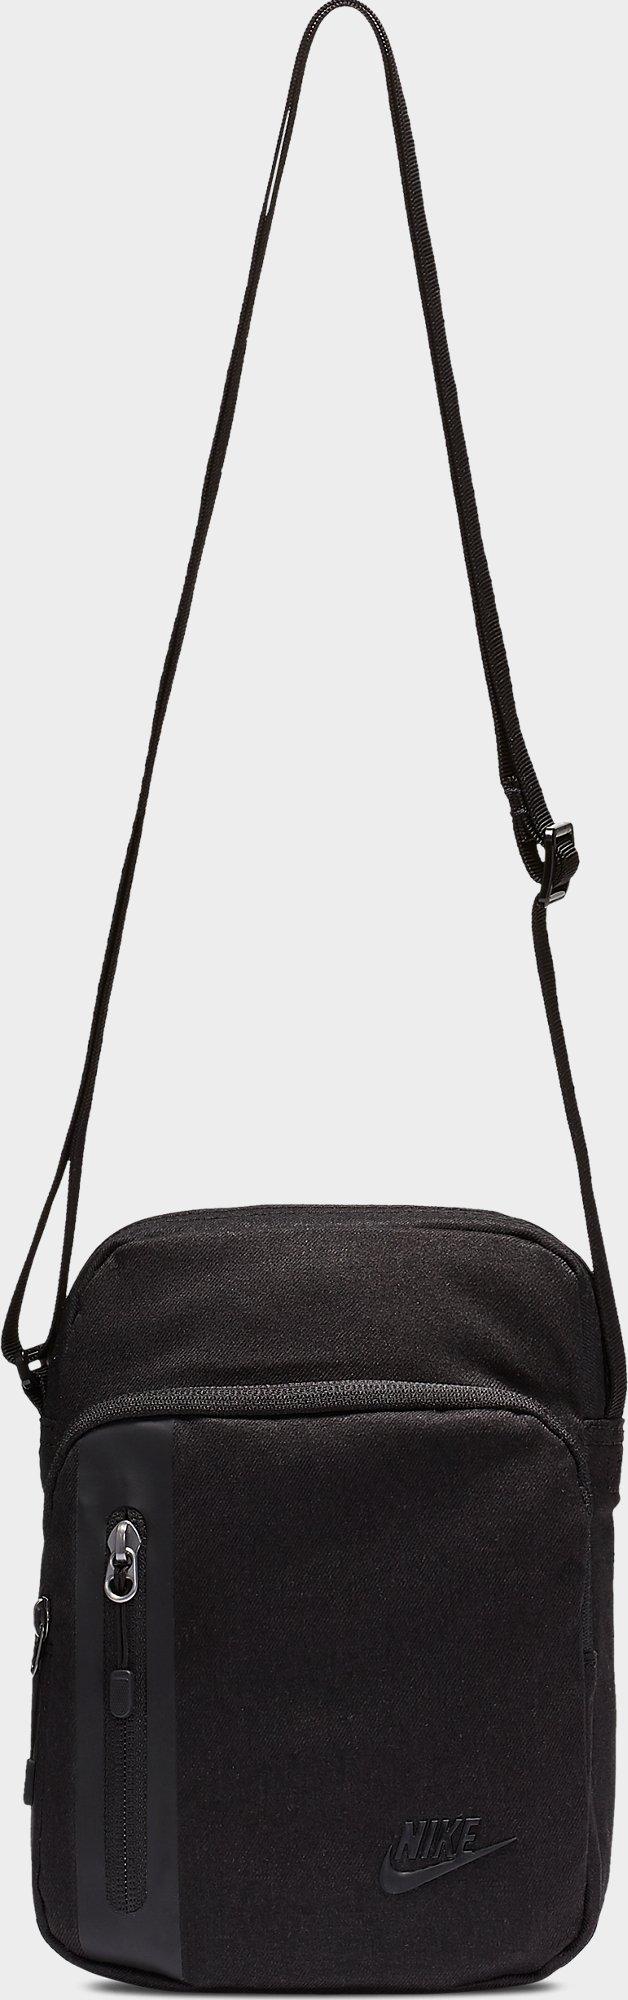 Nike Core Small Items 3.0 Crossbody Bag 